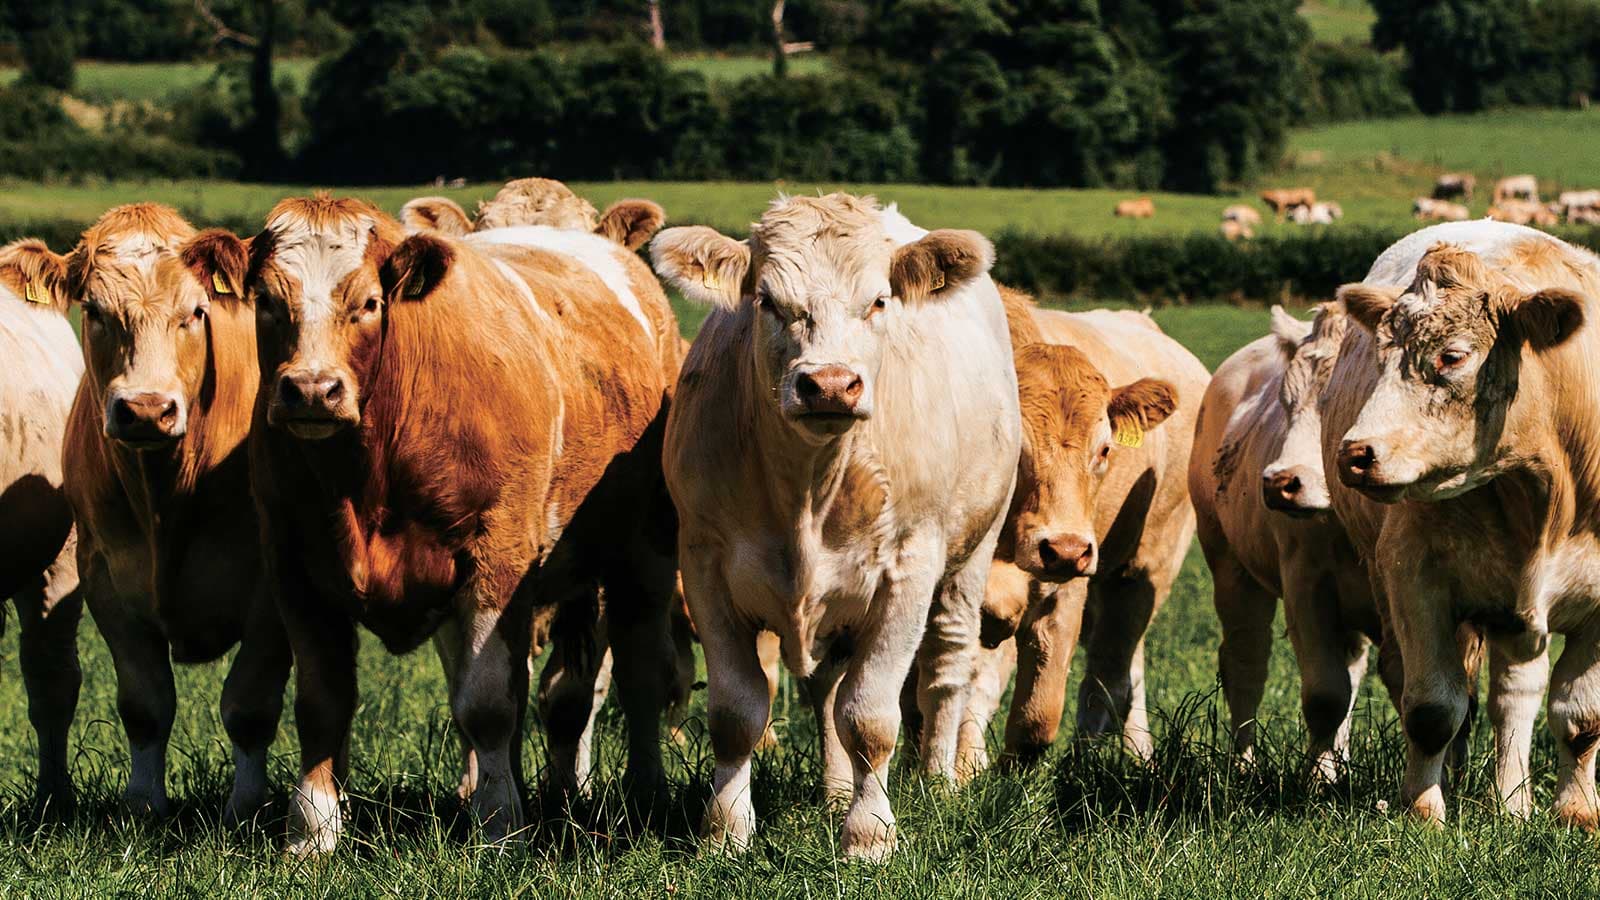 Bí quyết làm nên chất lượng thượng hạng của thịt bò và thịt heo châu Âu đến từ Ireland?